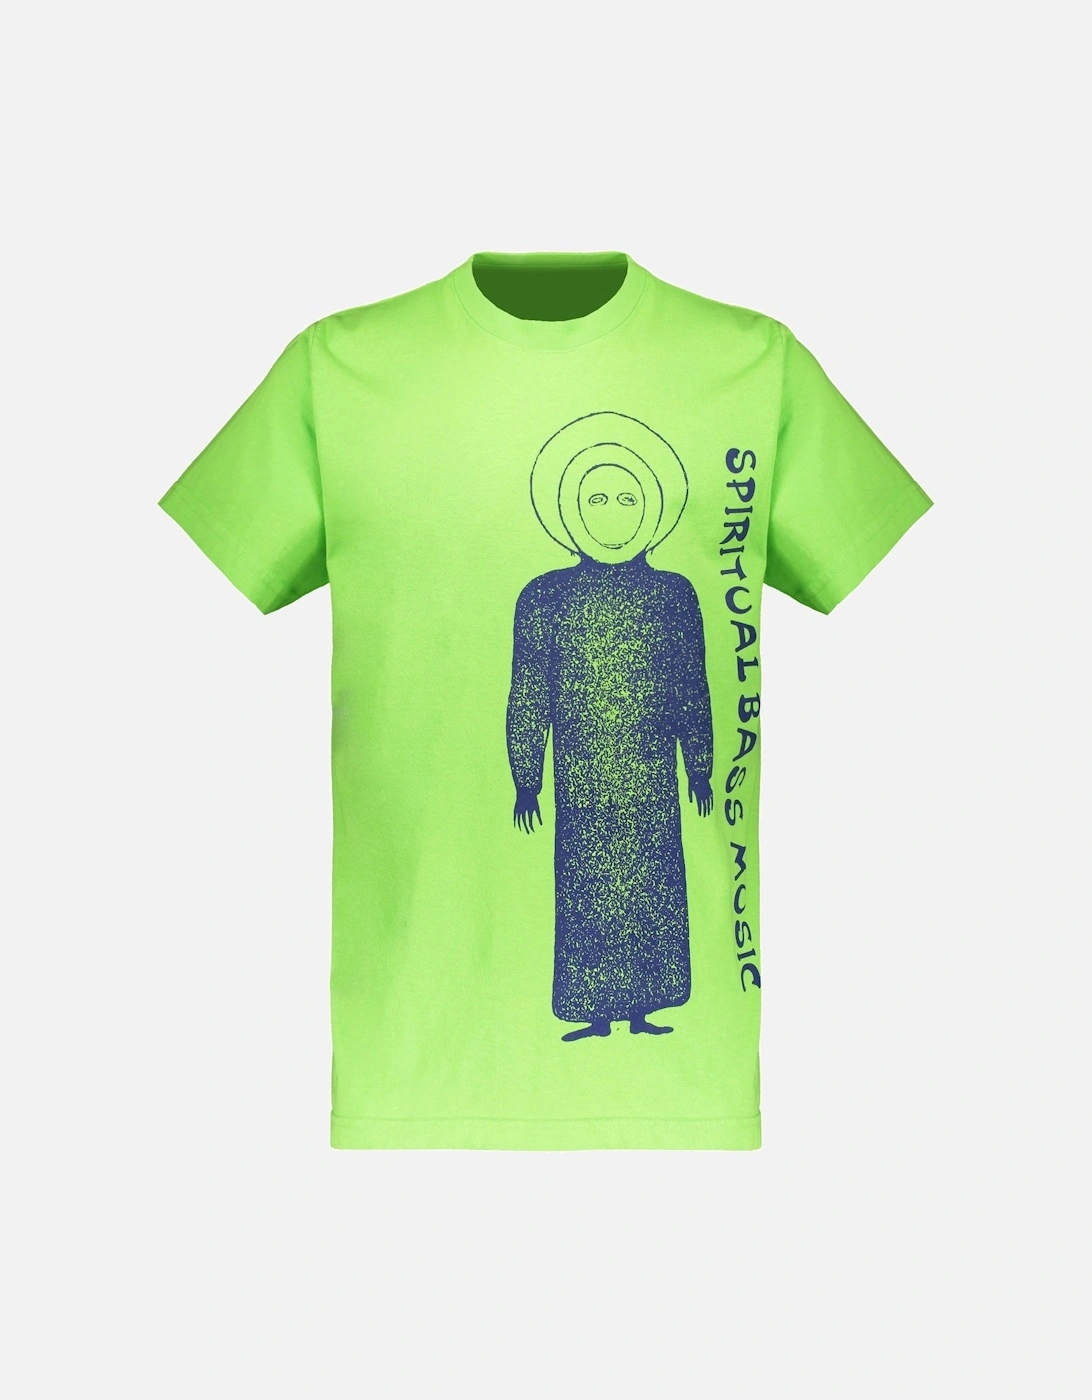 Spiritual Bass T-Shirt - Highlighter, 4 of 3